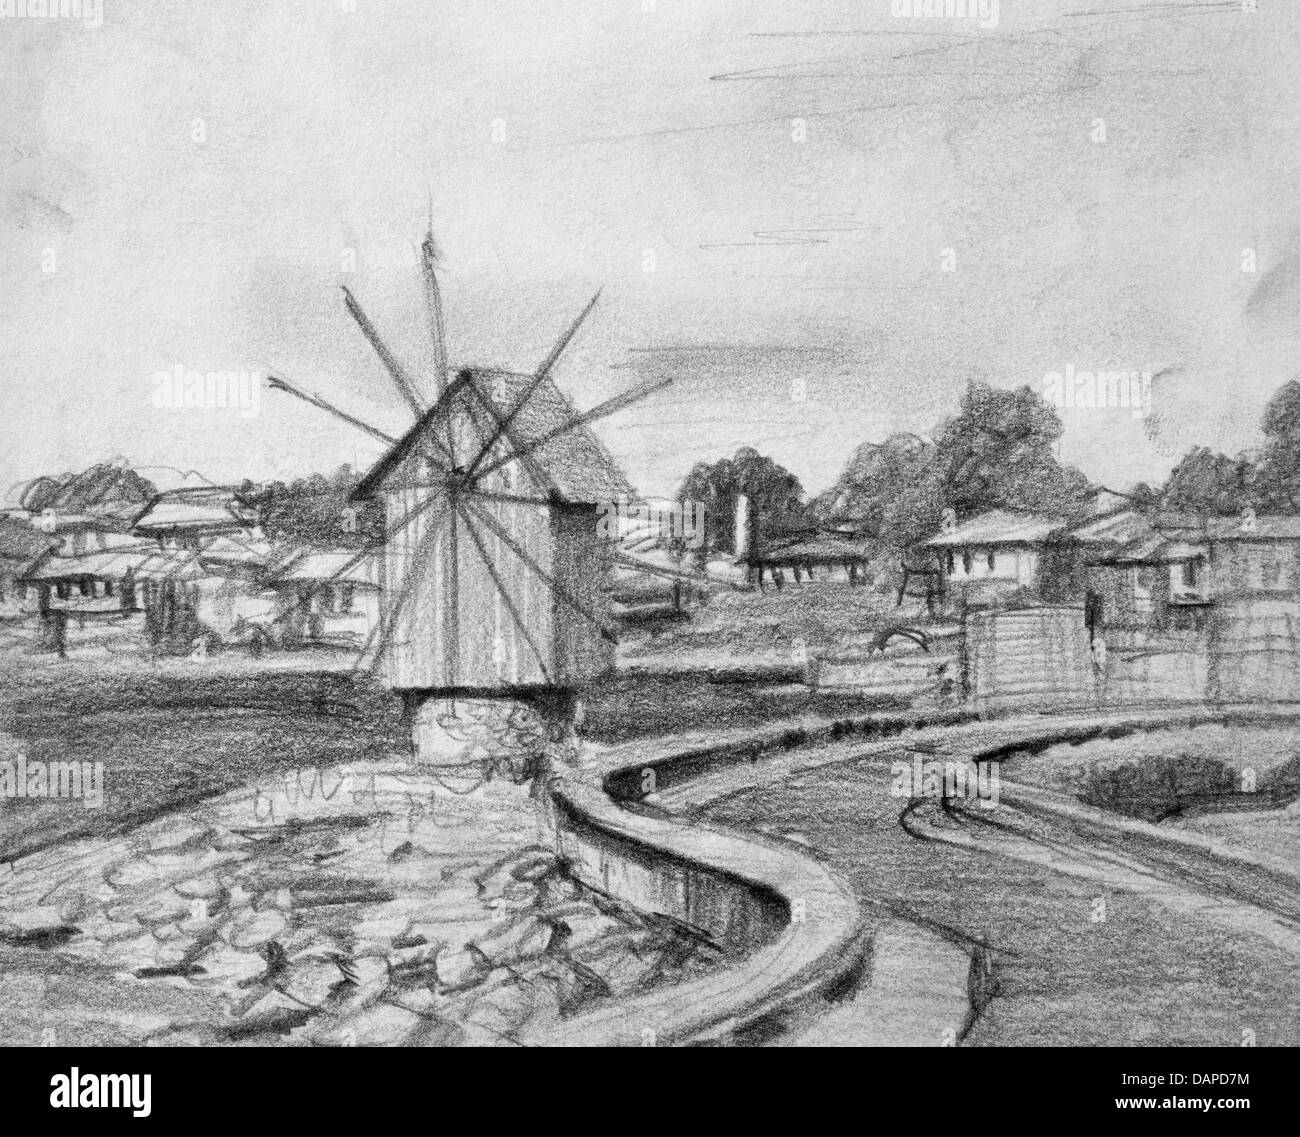 Dessin au crayon noir et blanc de l'ancien moulin dans Nesebarl, sur la côte bulgare de la mer Noire. Banque D'Images